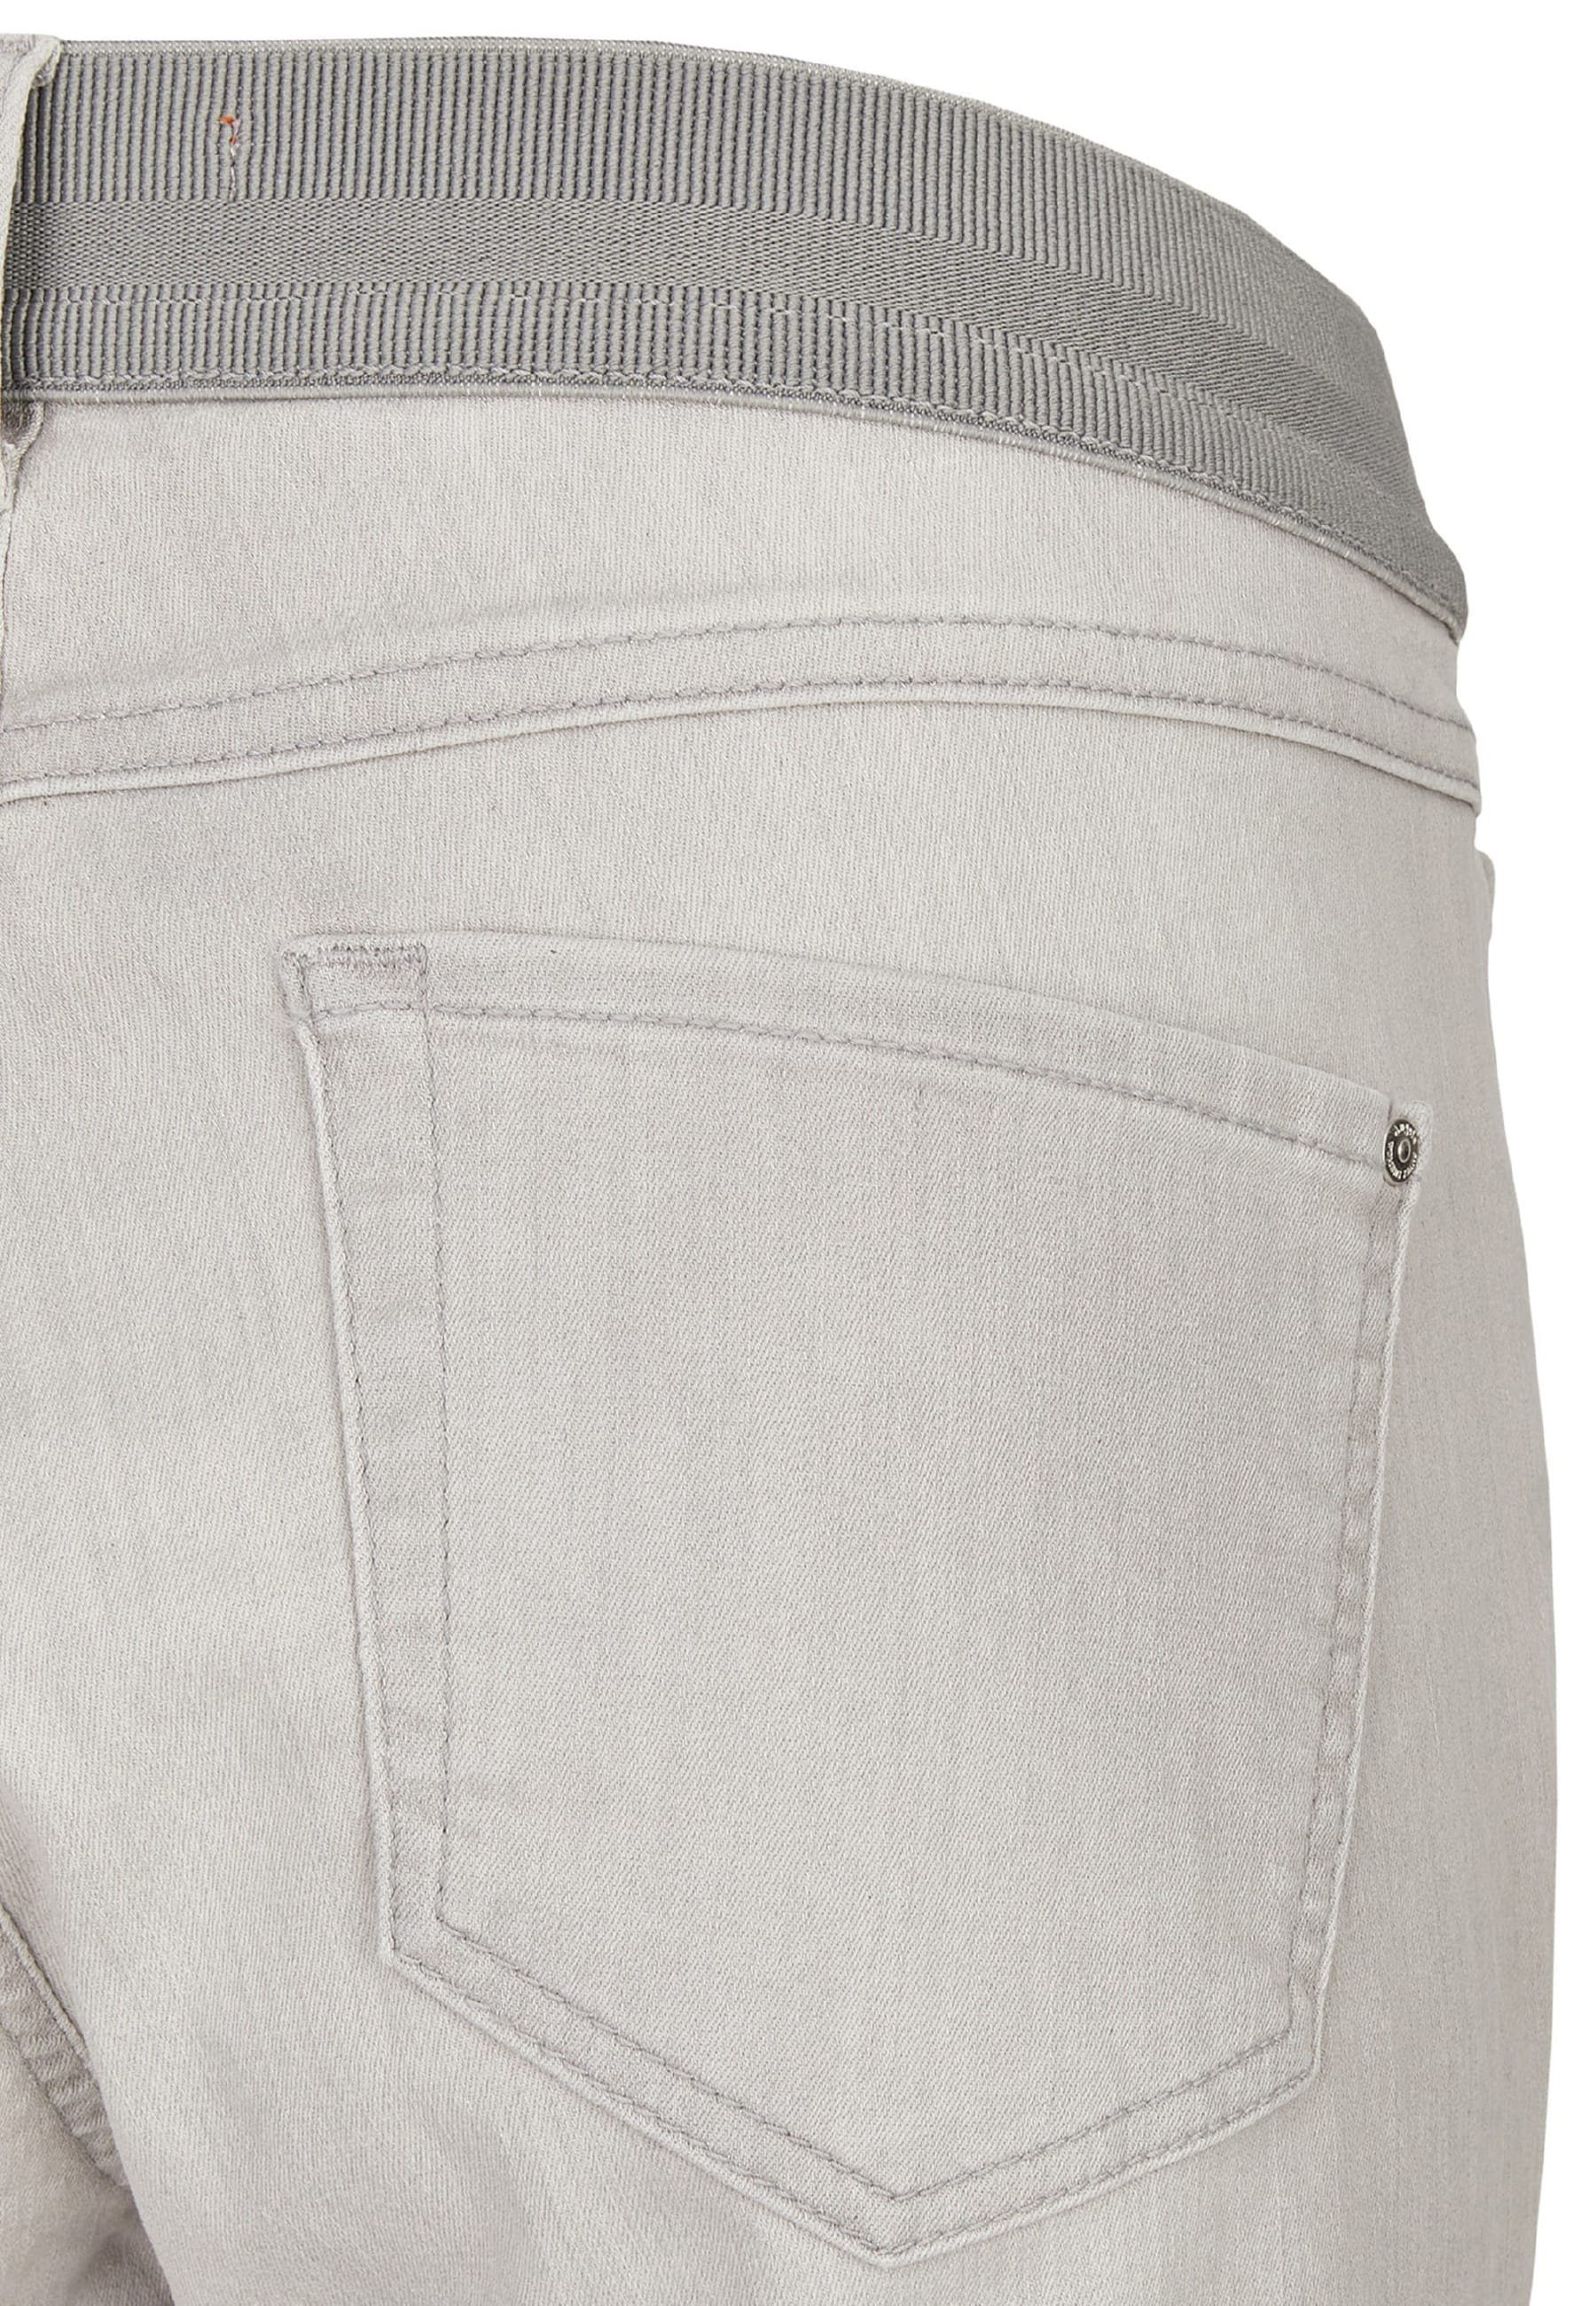 Capri Jeans Design Kurze Onesize Dehnbund-Jeans mit ANGELS hellgrau klassischem